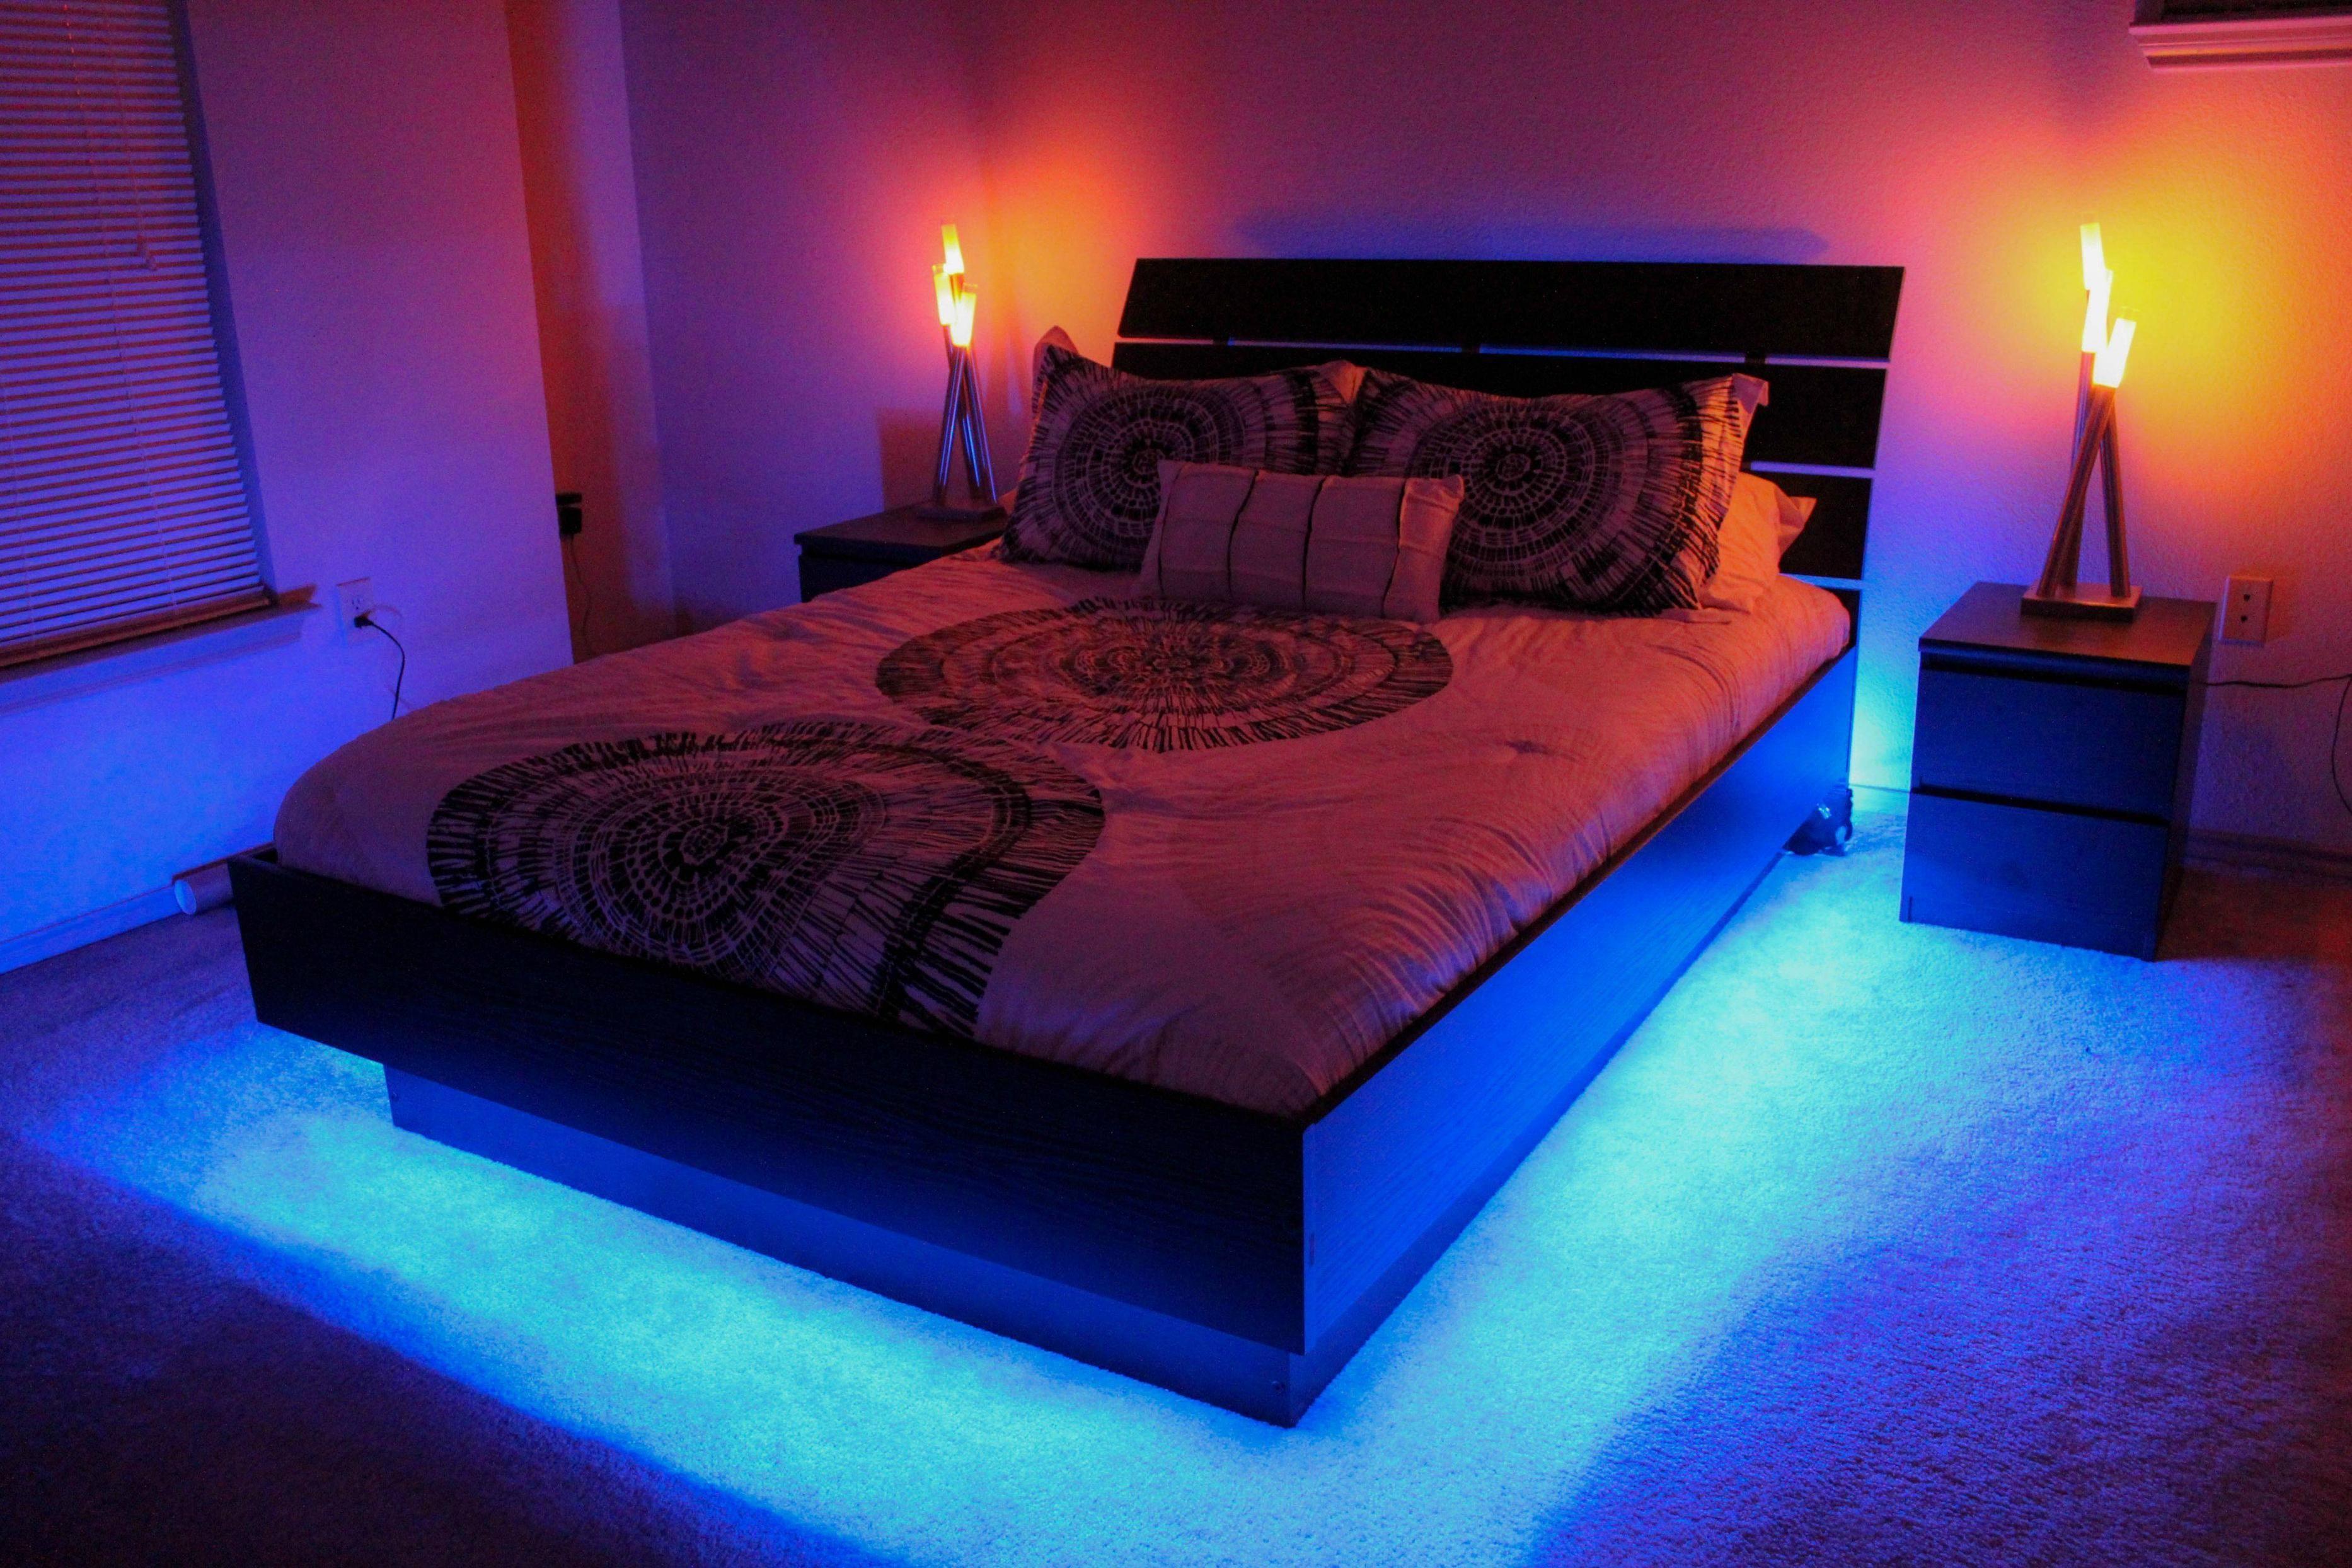 Erotic bedroom lighting